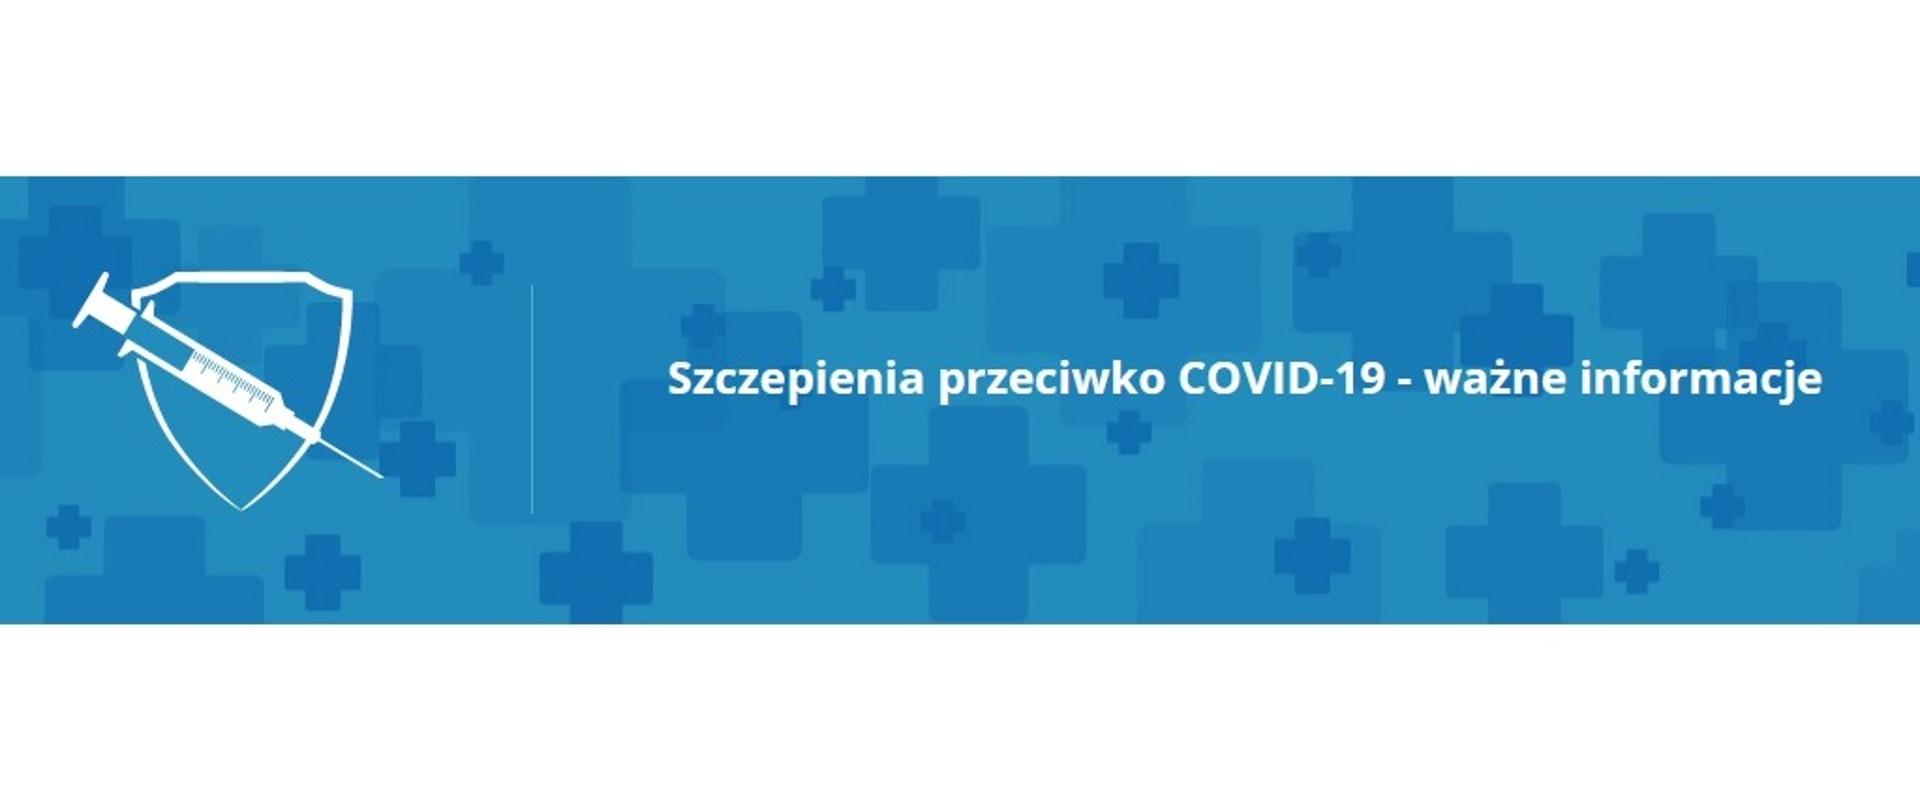 Zdjęcie przedstawia strzykawkę na tle tarczy oraz napis: Szczepienia przeciwko COVID-19 - ważne informacje